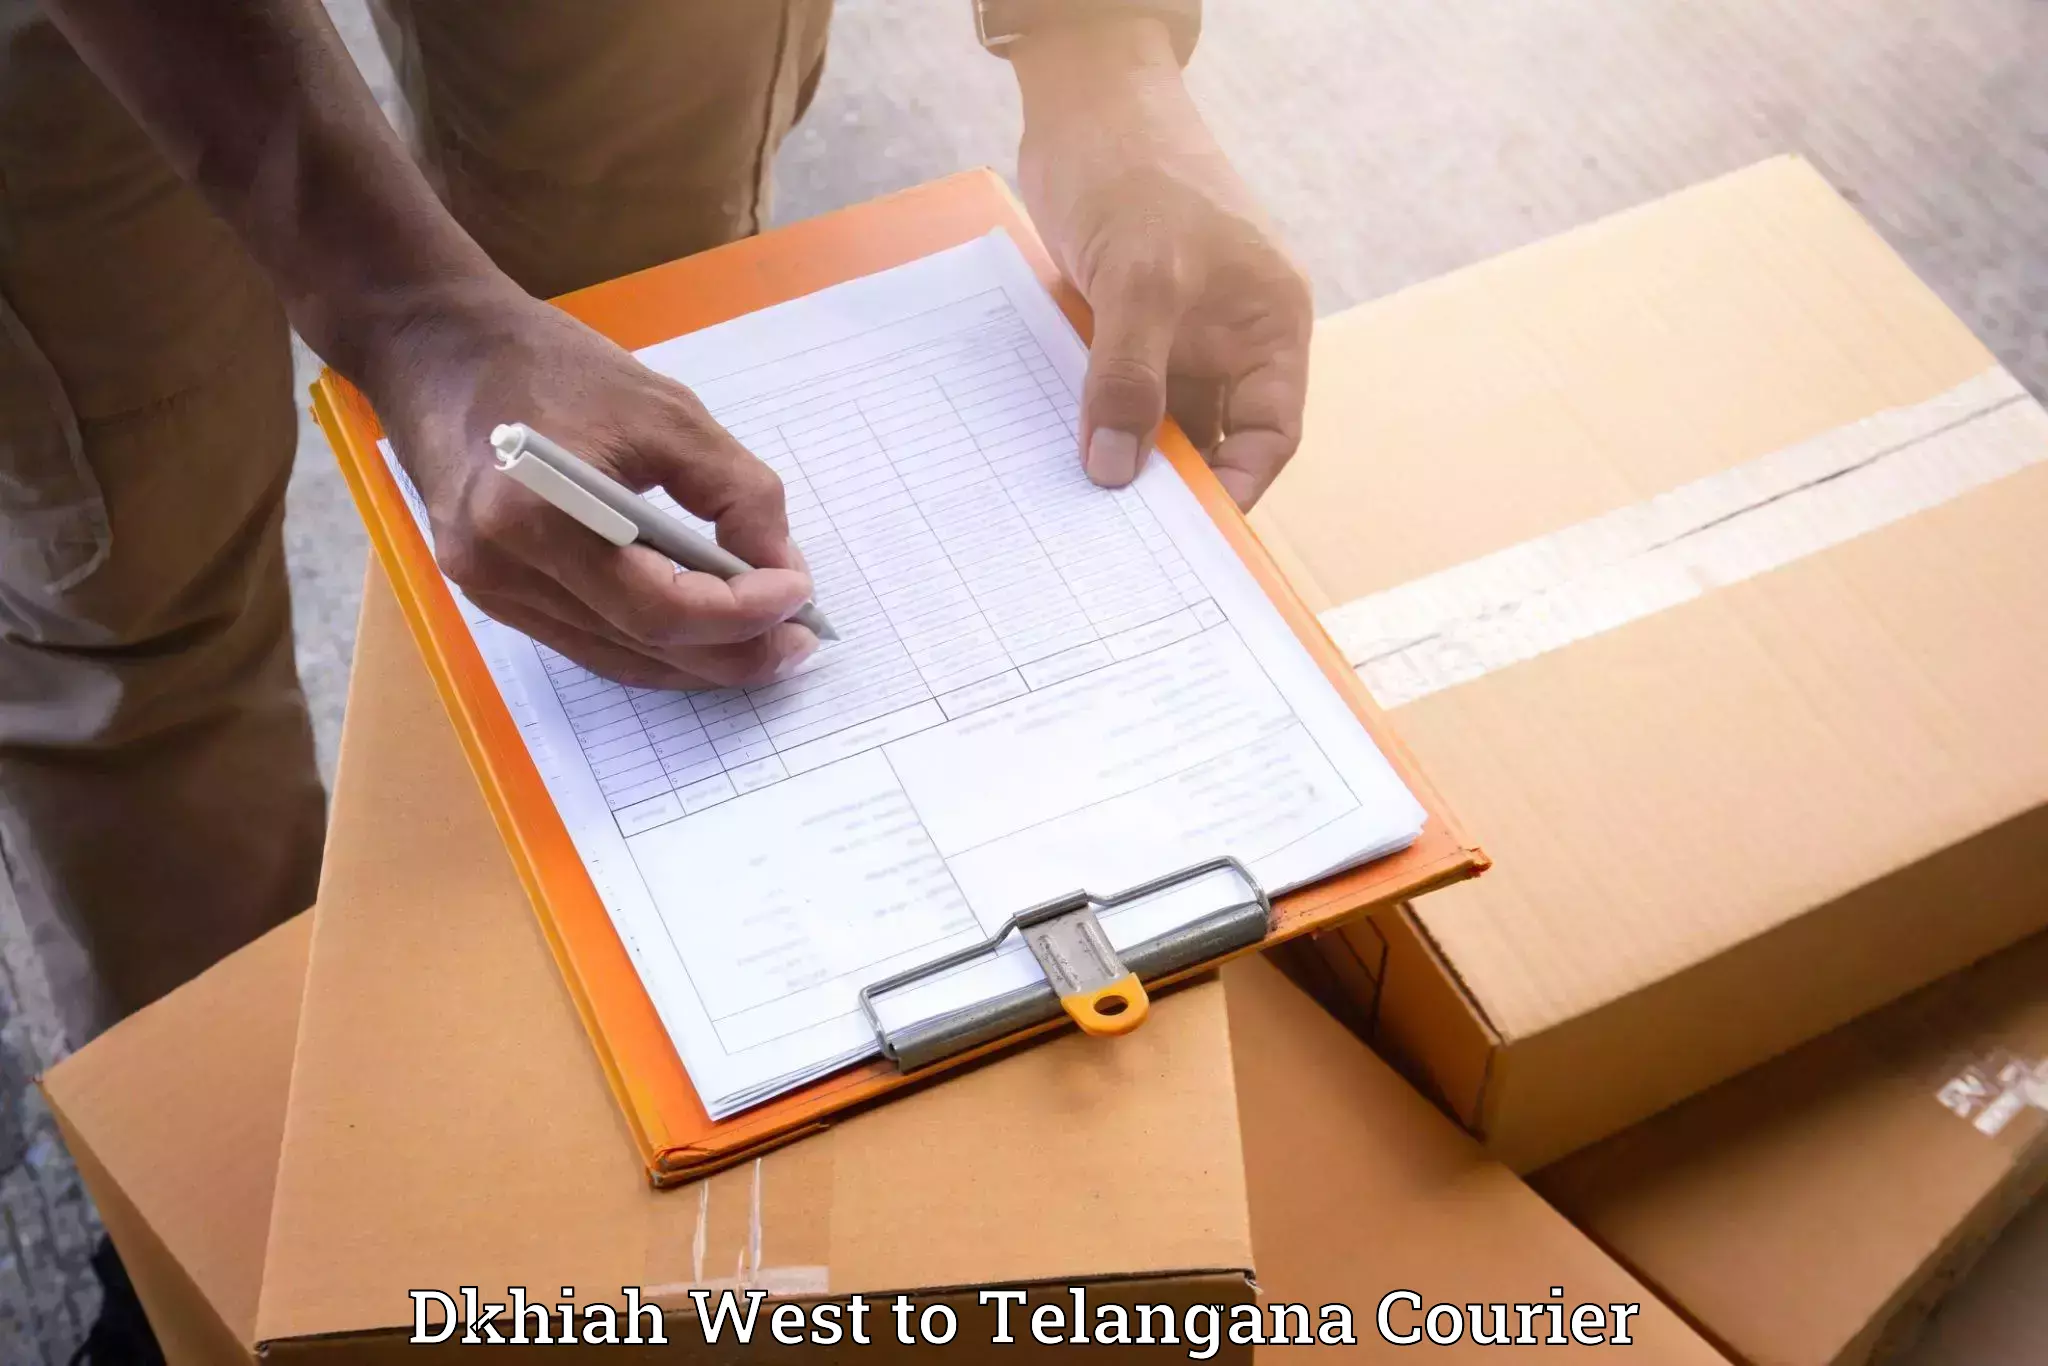 Professional movers Dkhiah West to Veenavanka